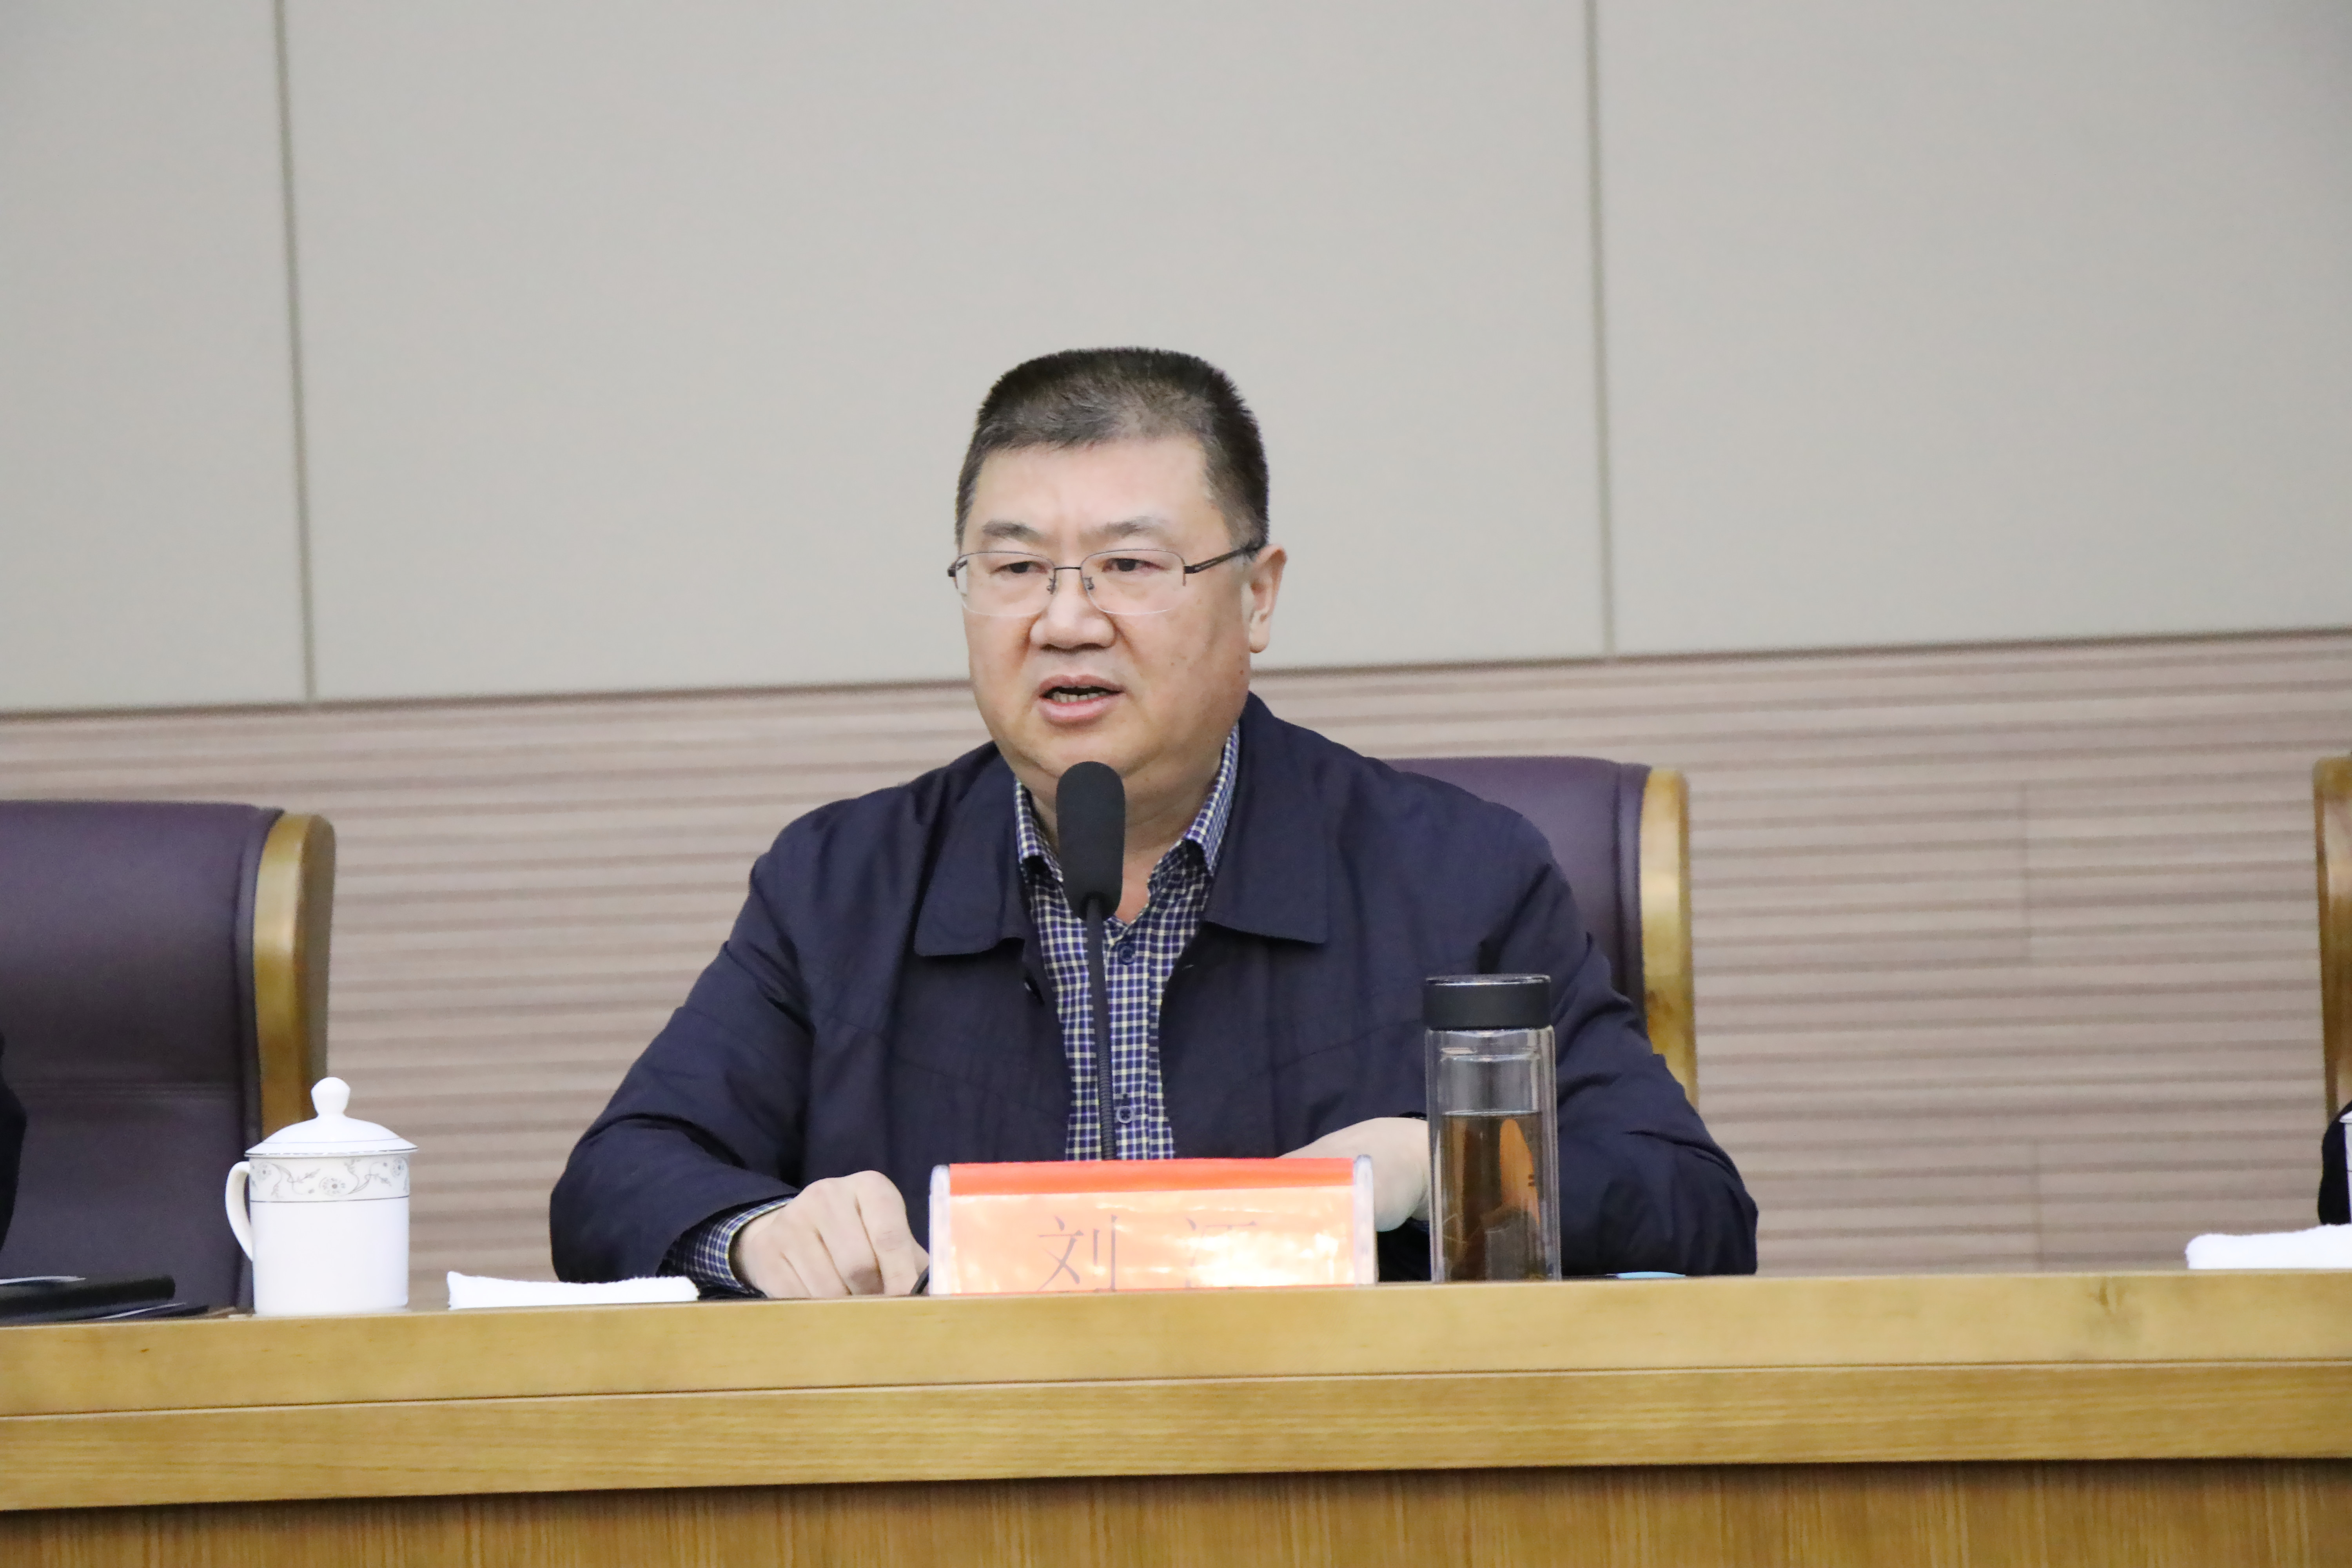 首先,陈作松宣读了《经开区城管分局"业务素质提升年"活动实施方案》